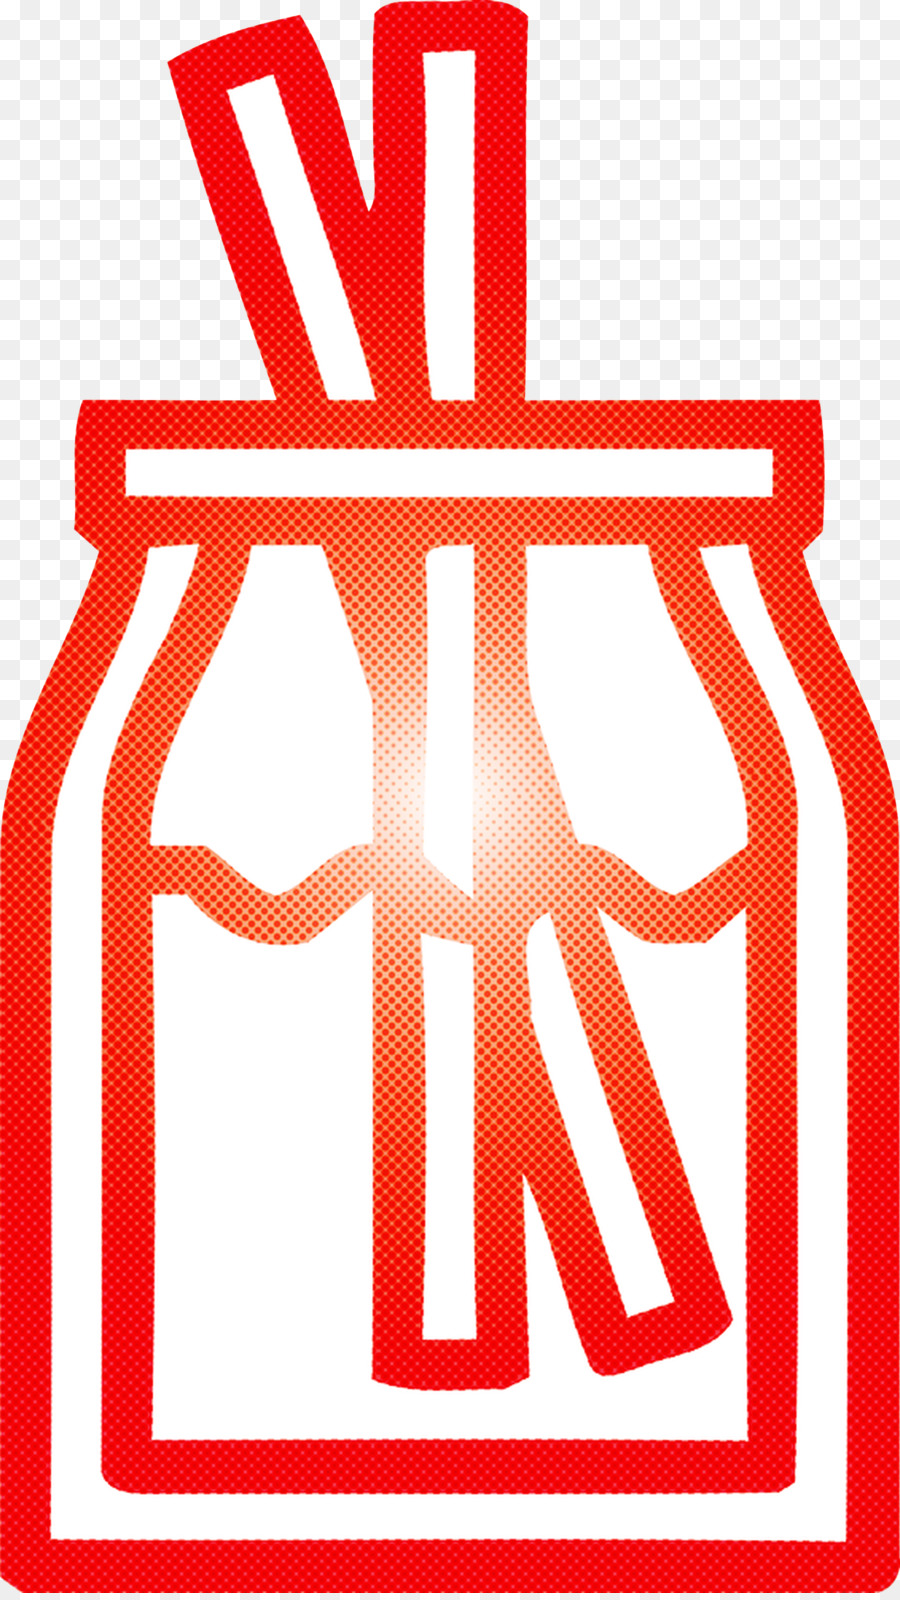 Textzeile Schrift Logo - 